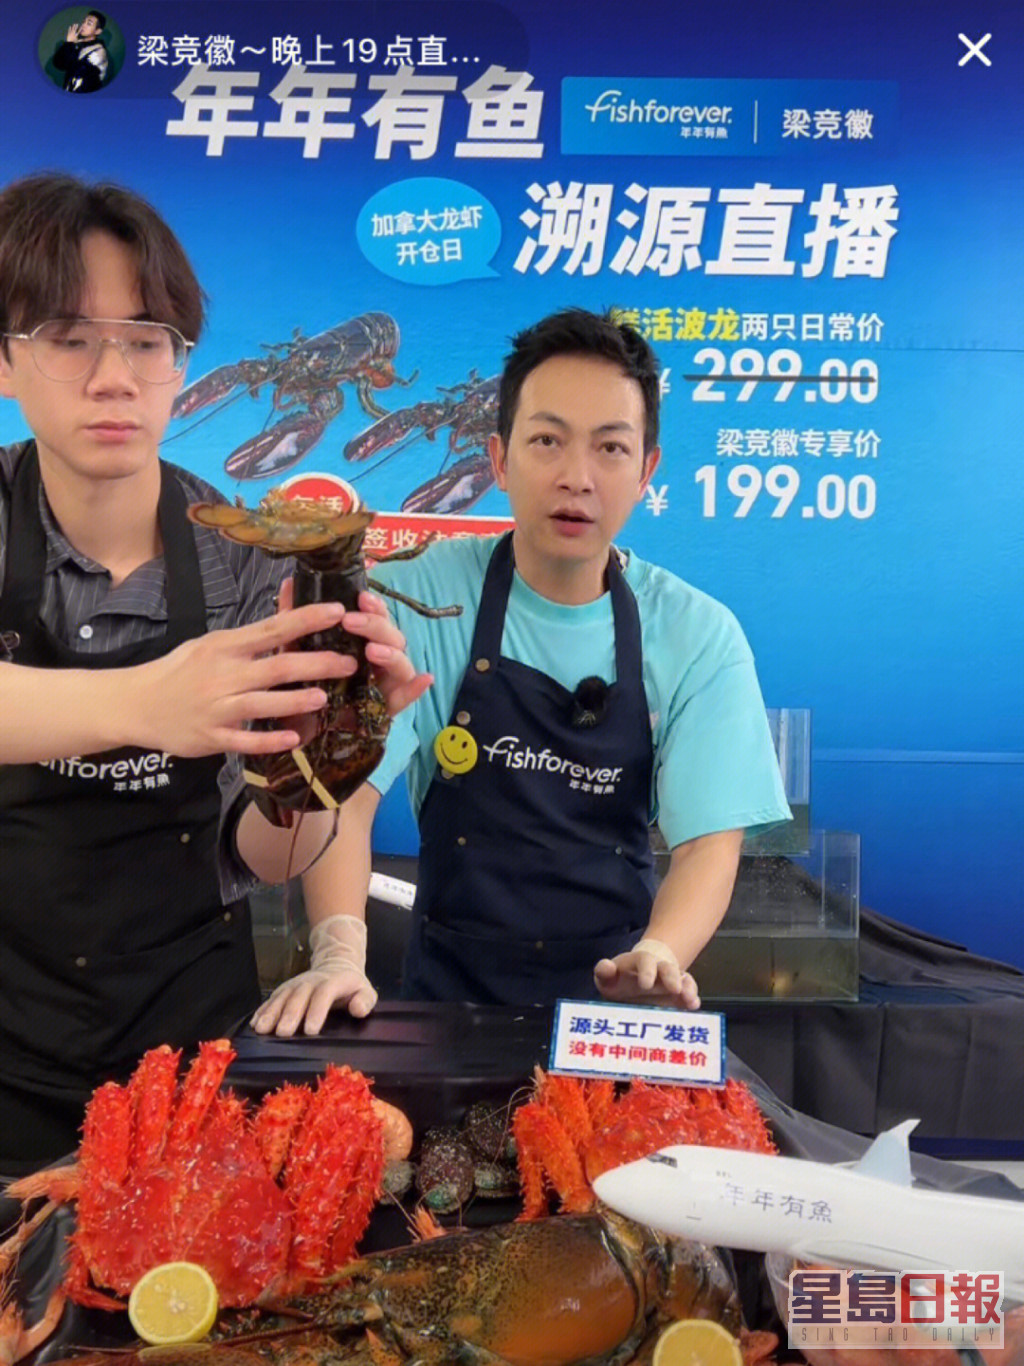 梁竞徽最近试过直播带货卖龙虾。